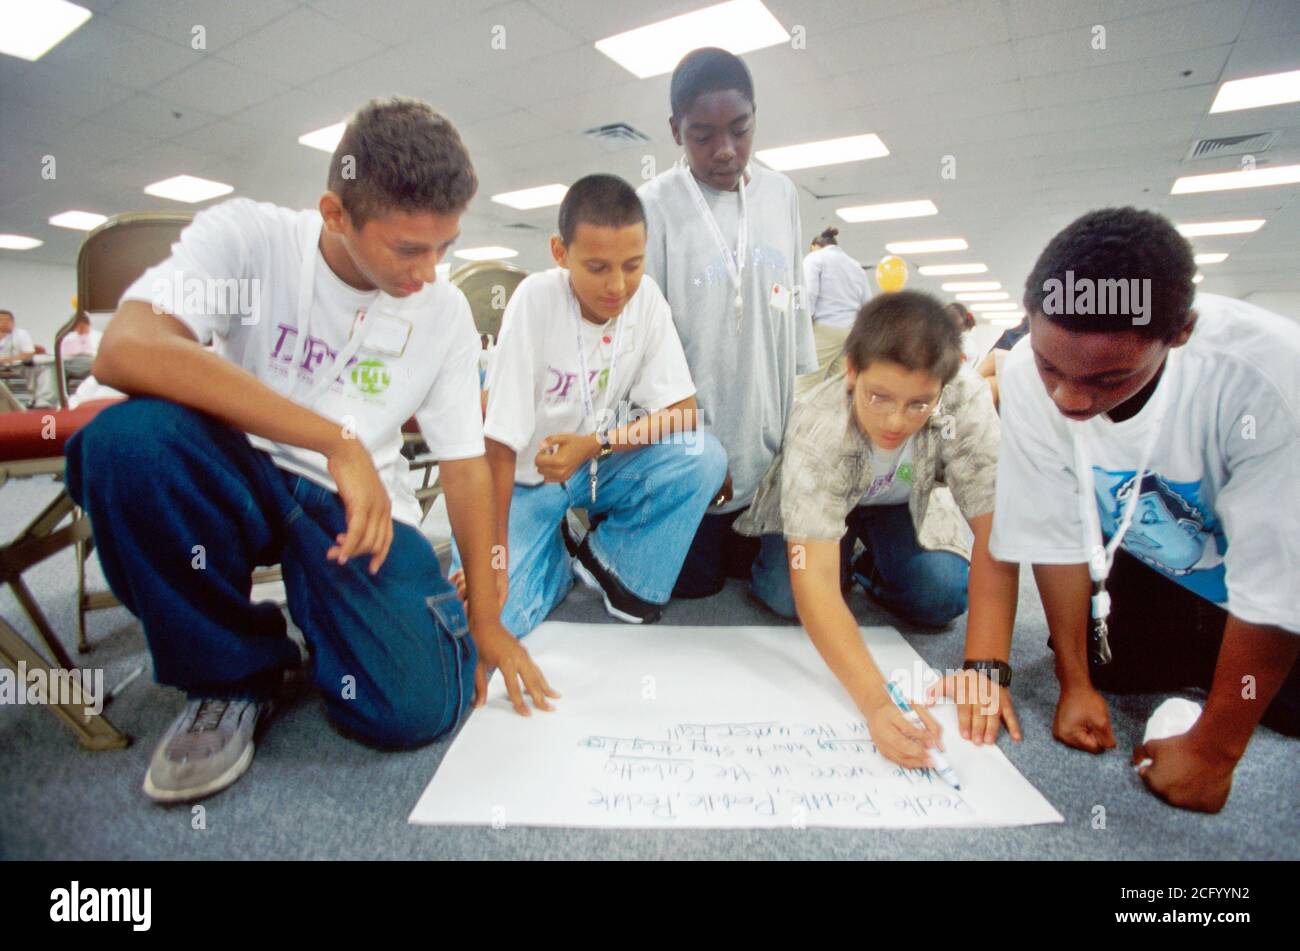 Miami Florida, Jugend Club Student Studenten sucht Missbrauch Prävention Organisation, Anti-sucht-Workshop Workshops Teamarbeit zusammen, machen m Stockfoto